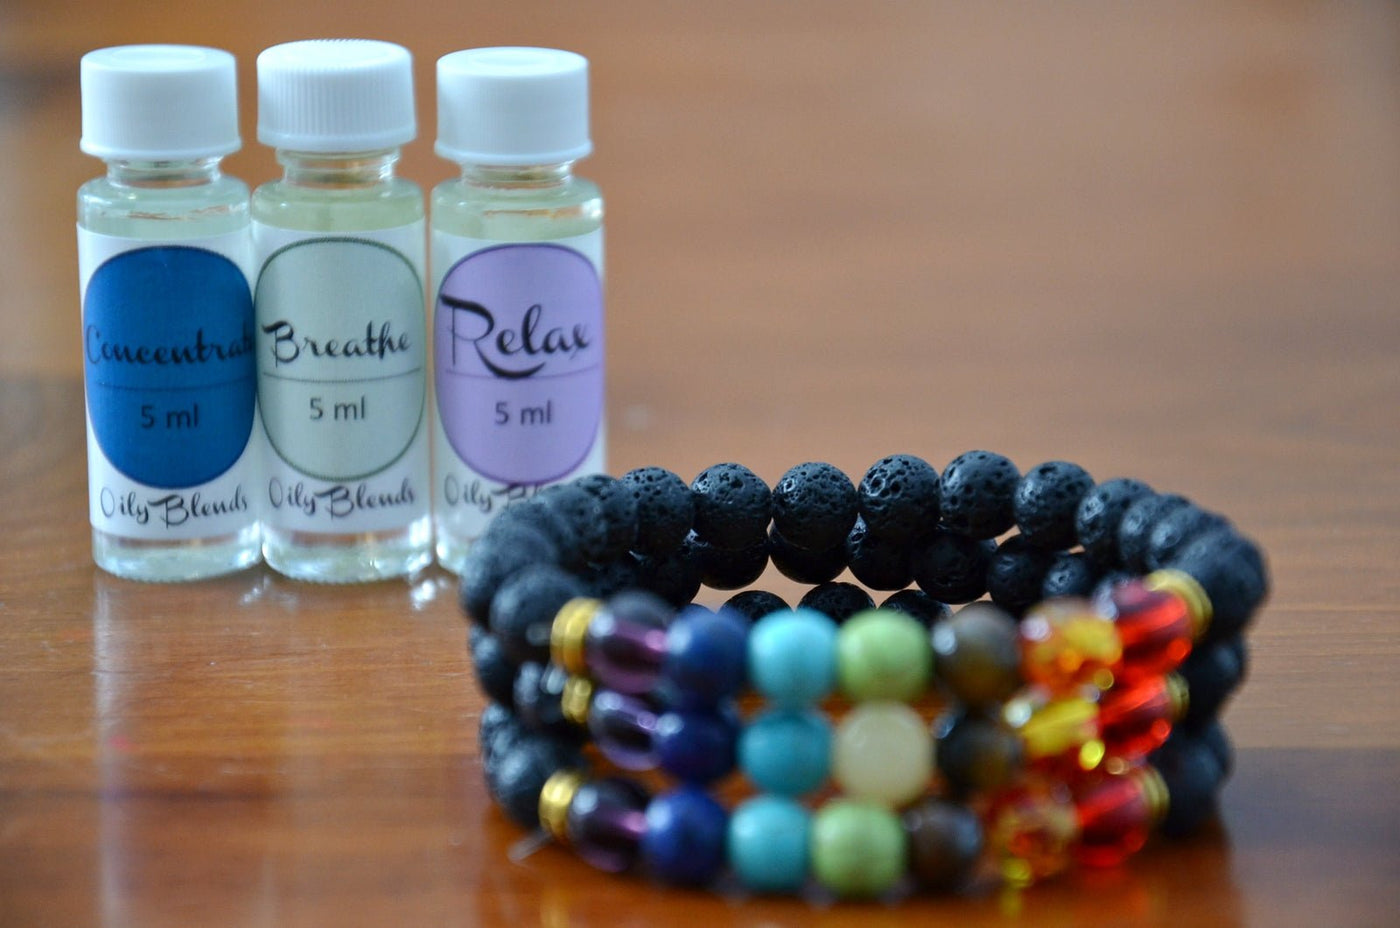 Multi-Colored Lava Stone Diffuser Bracelets - Oily BlendsMulti-Colored Lava Stone Diffuser Bracelets